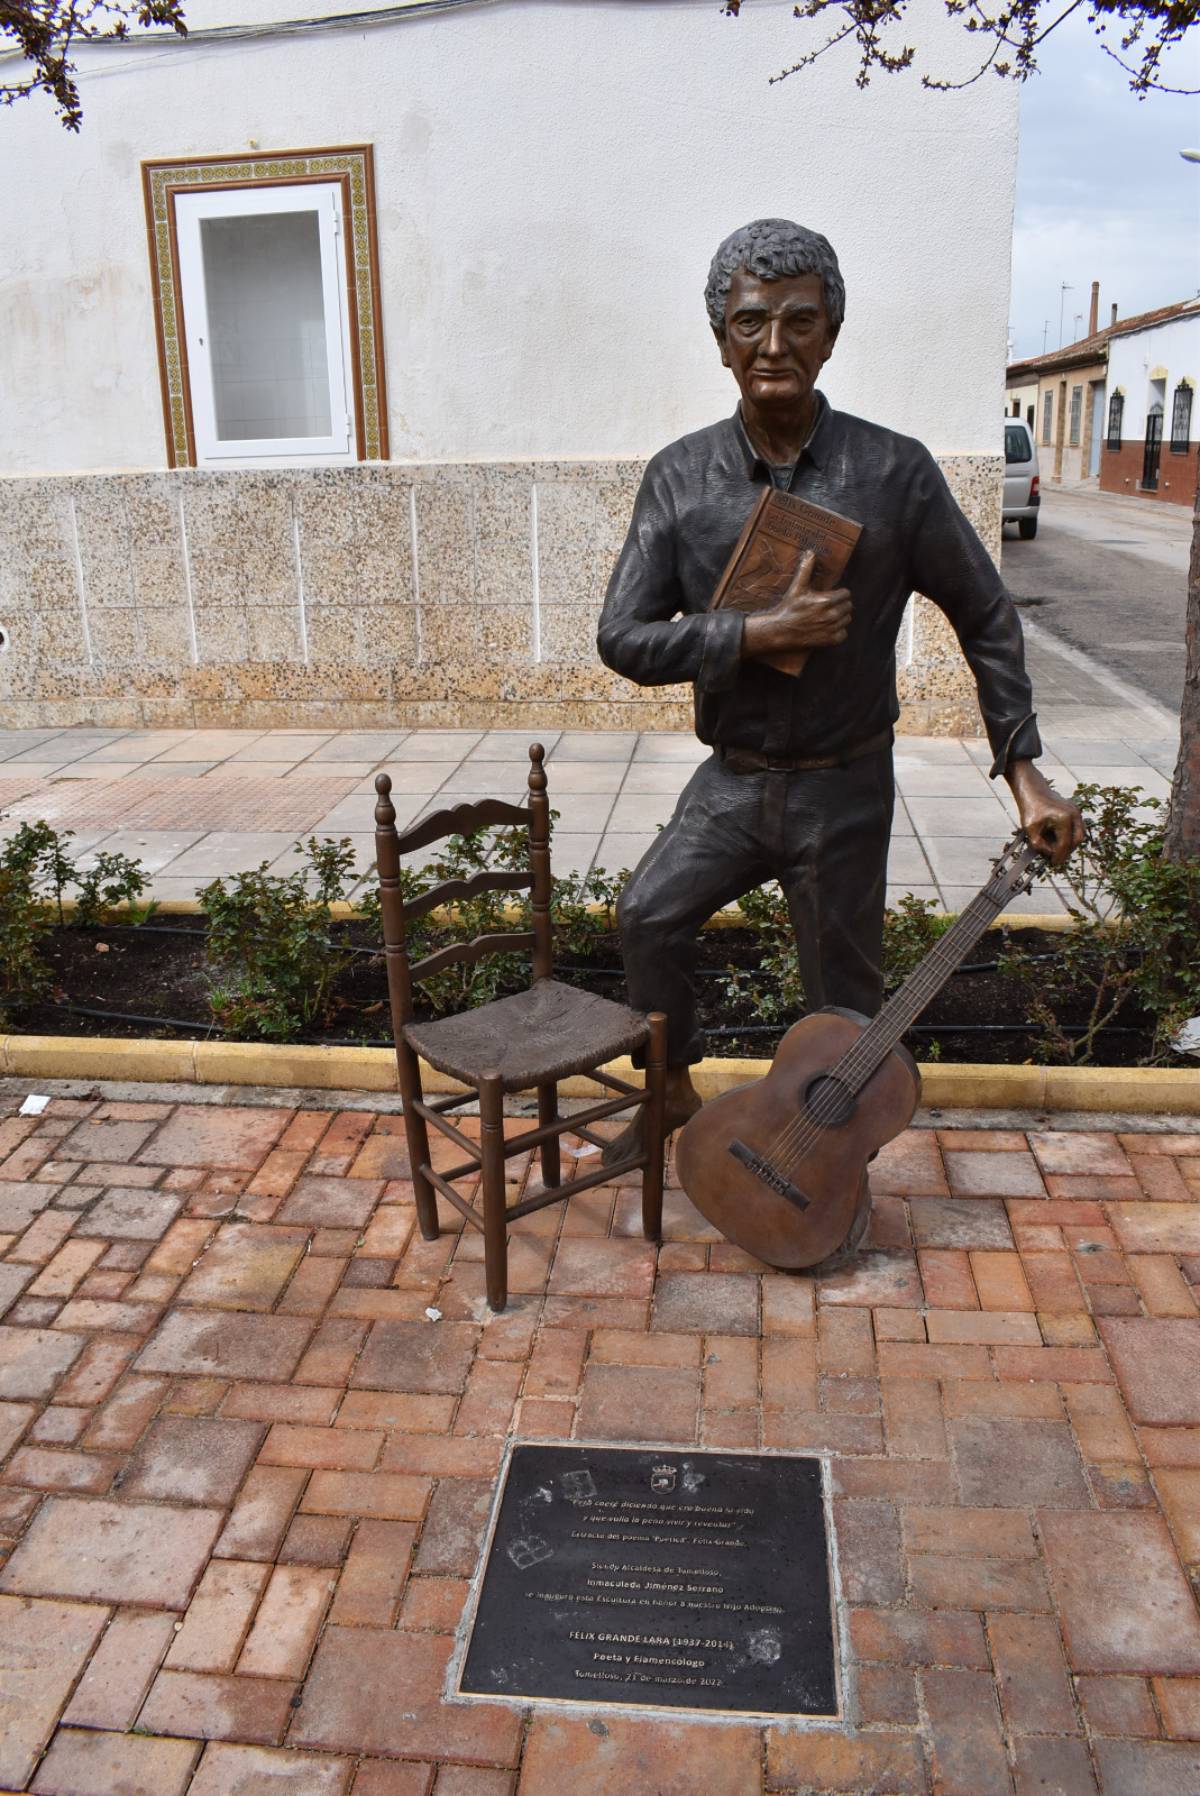 Inaugurada la escultura en honor al poeta y flamencólogo Félix Grande en el barrio del Moral de Tomelloso